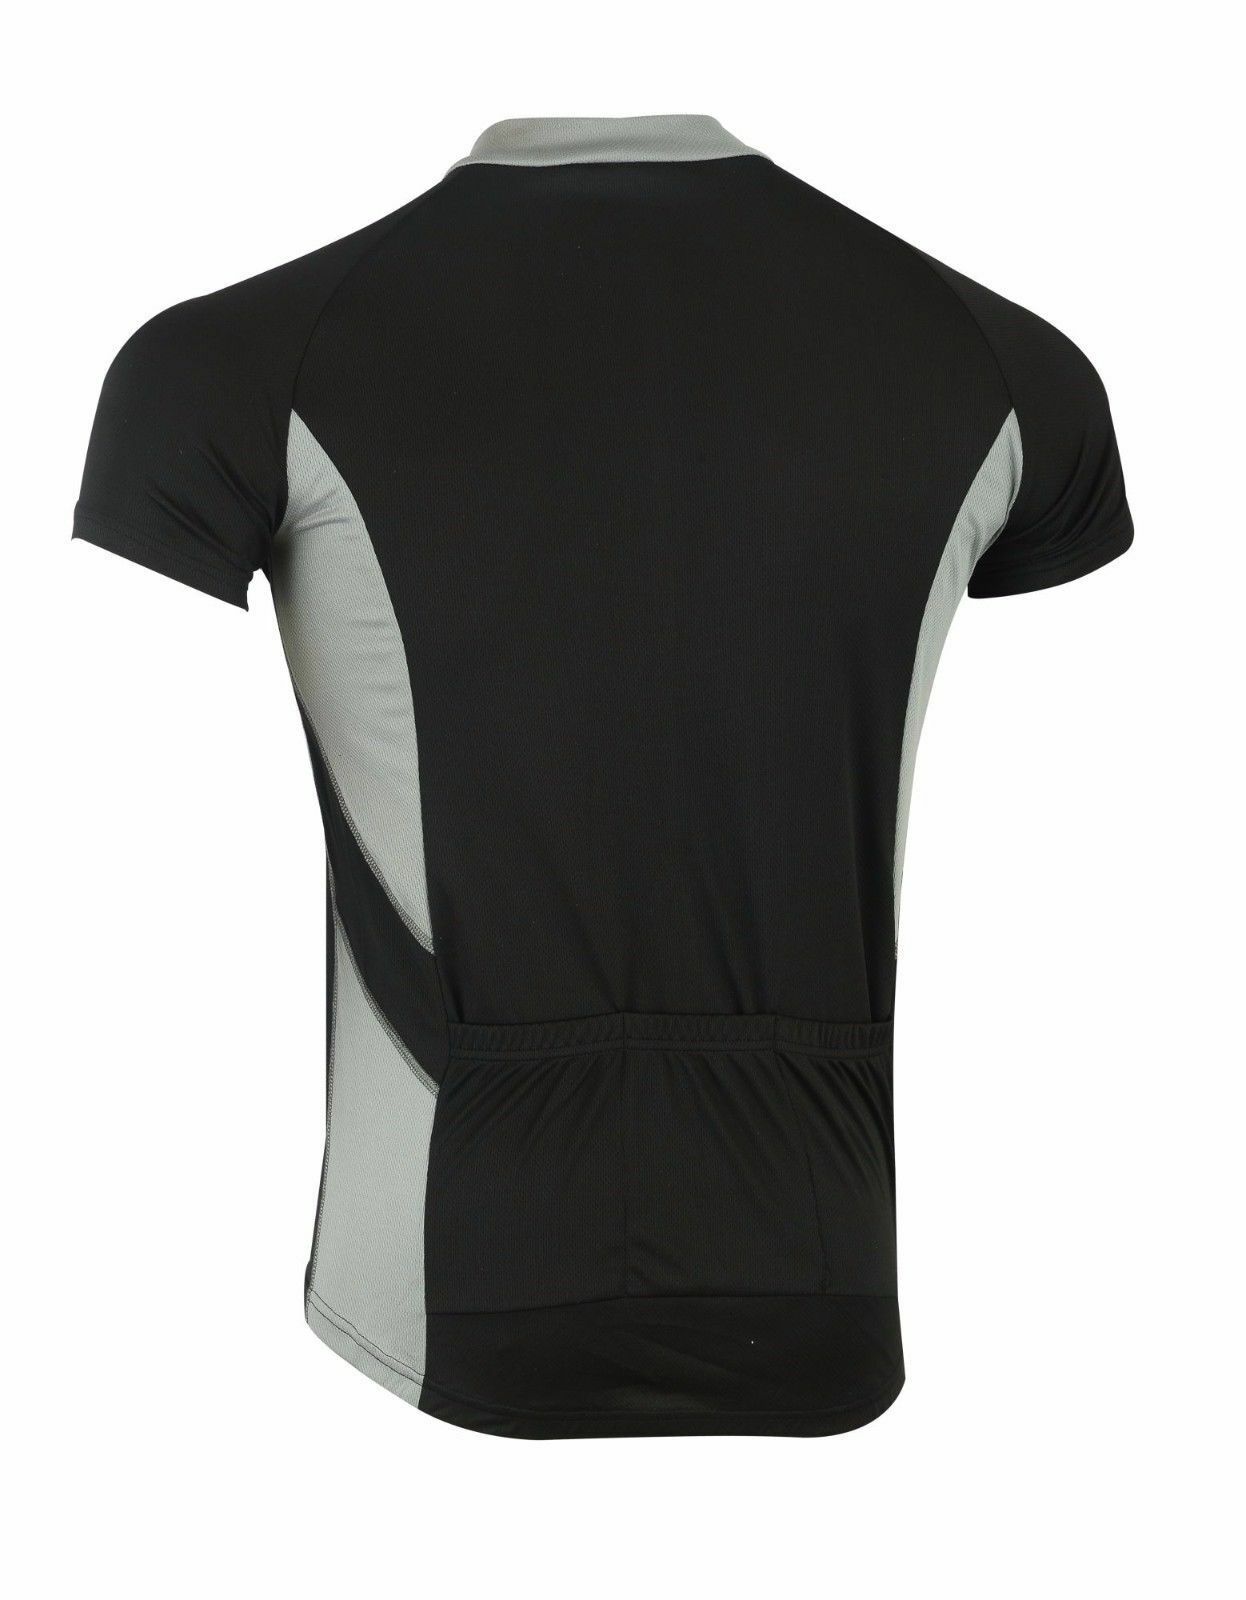 Mens Cycling Jersey Short Sleeves Black/Grey